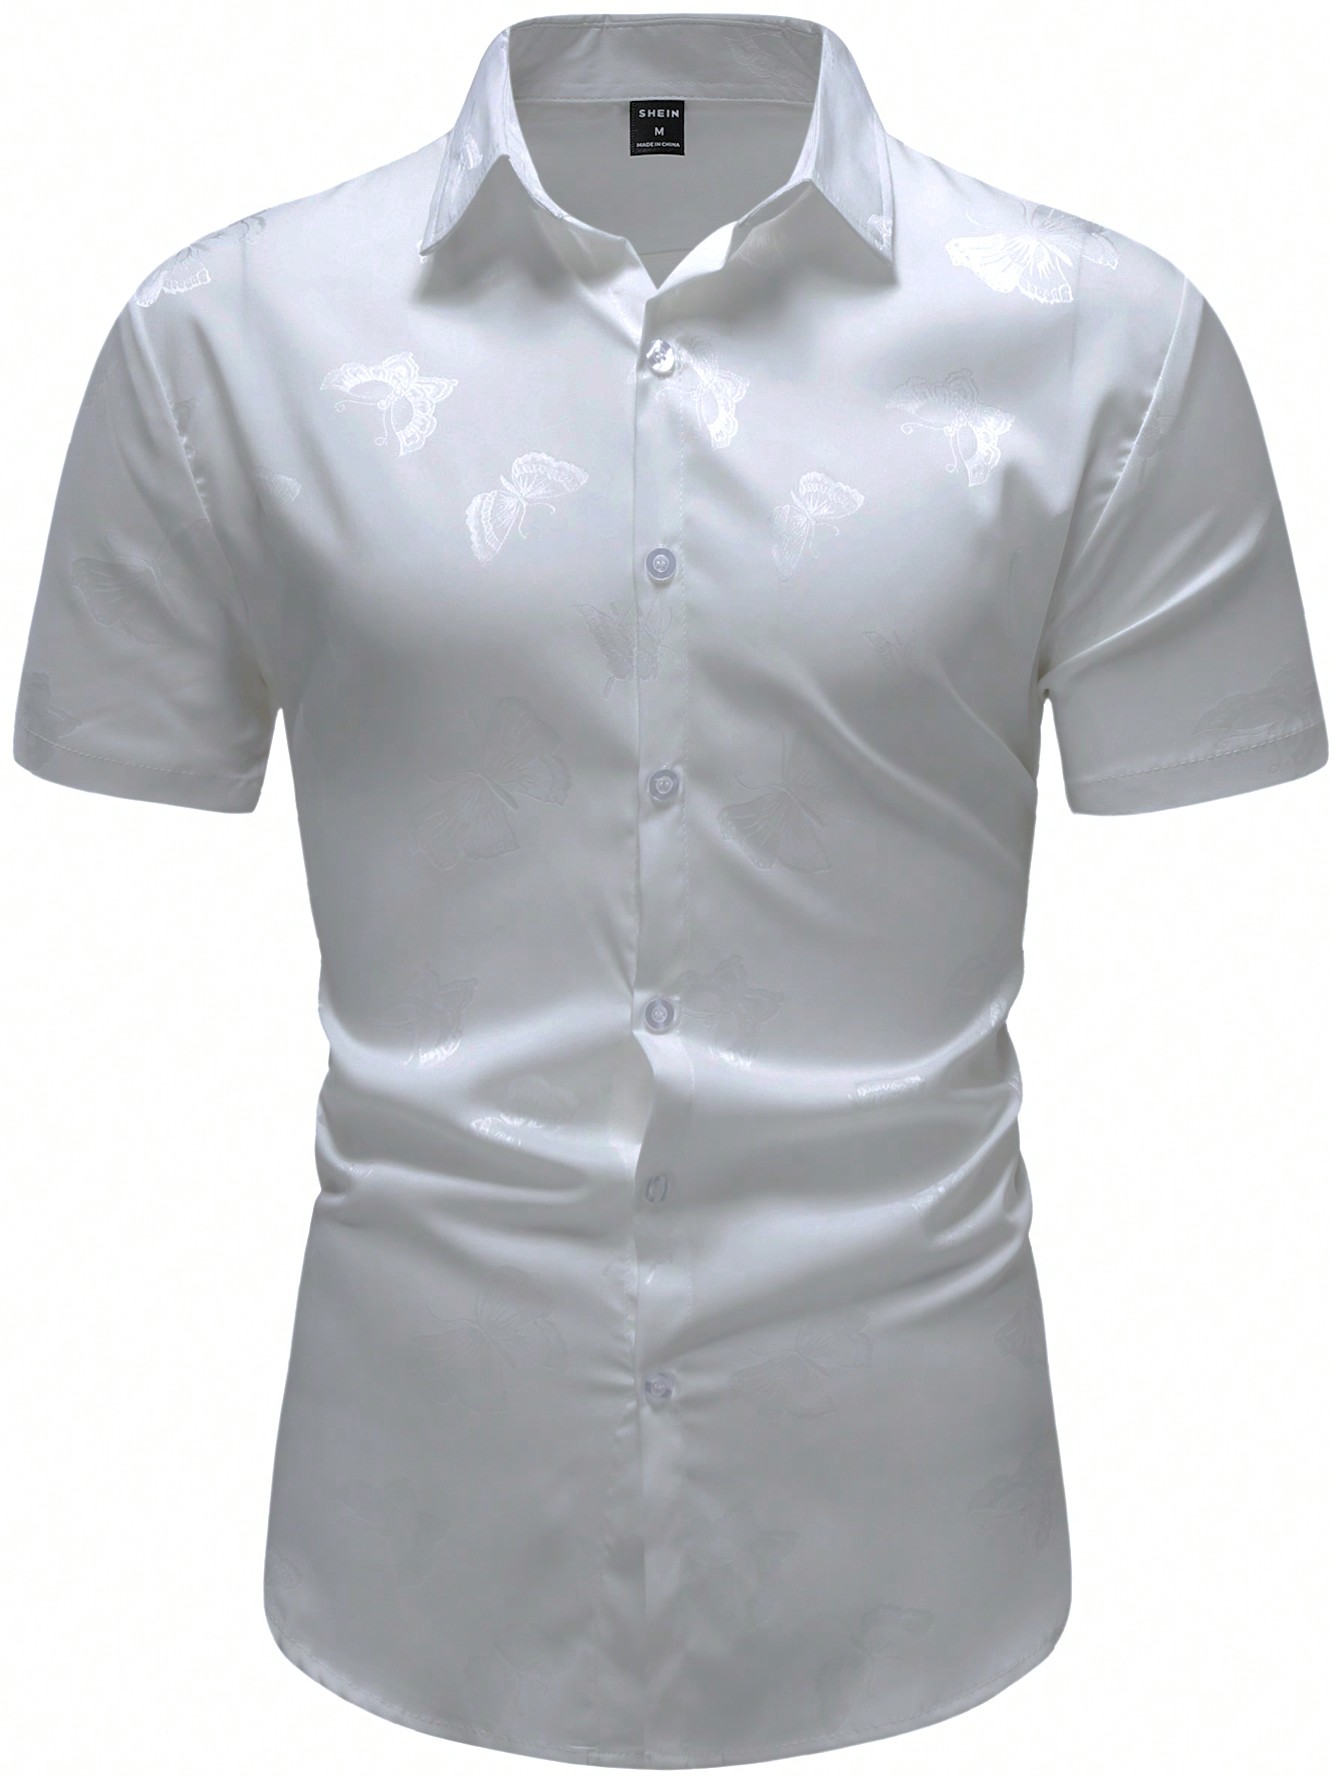 Мужская однотонная рубашка на пуговицах с коротким рукавом Manfinity AFTRDRK, серебро мужская повседневная рубашка с коротким рукавом на пуговицах бежевый